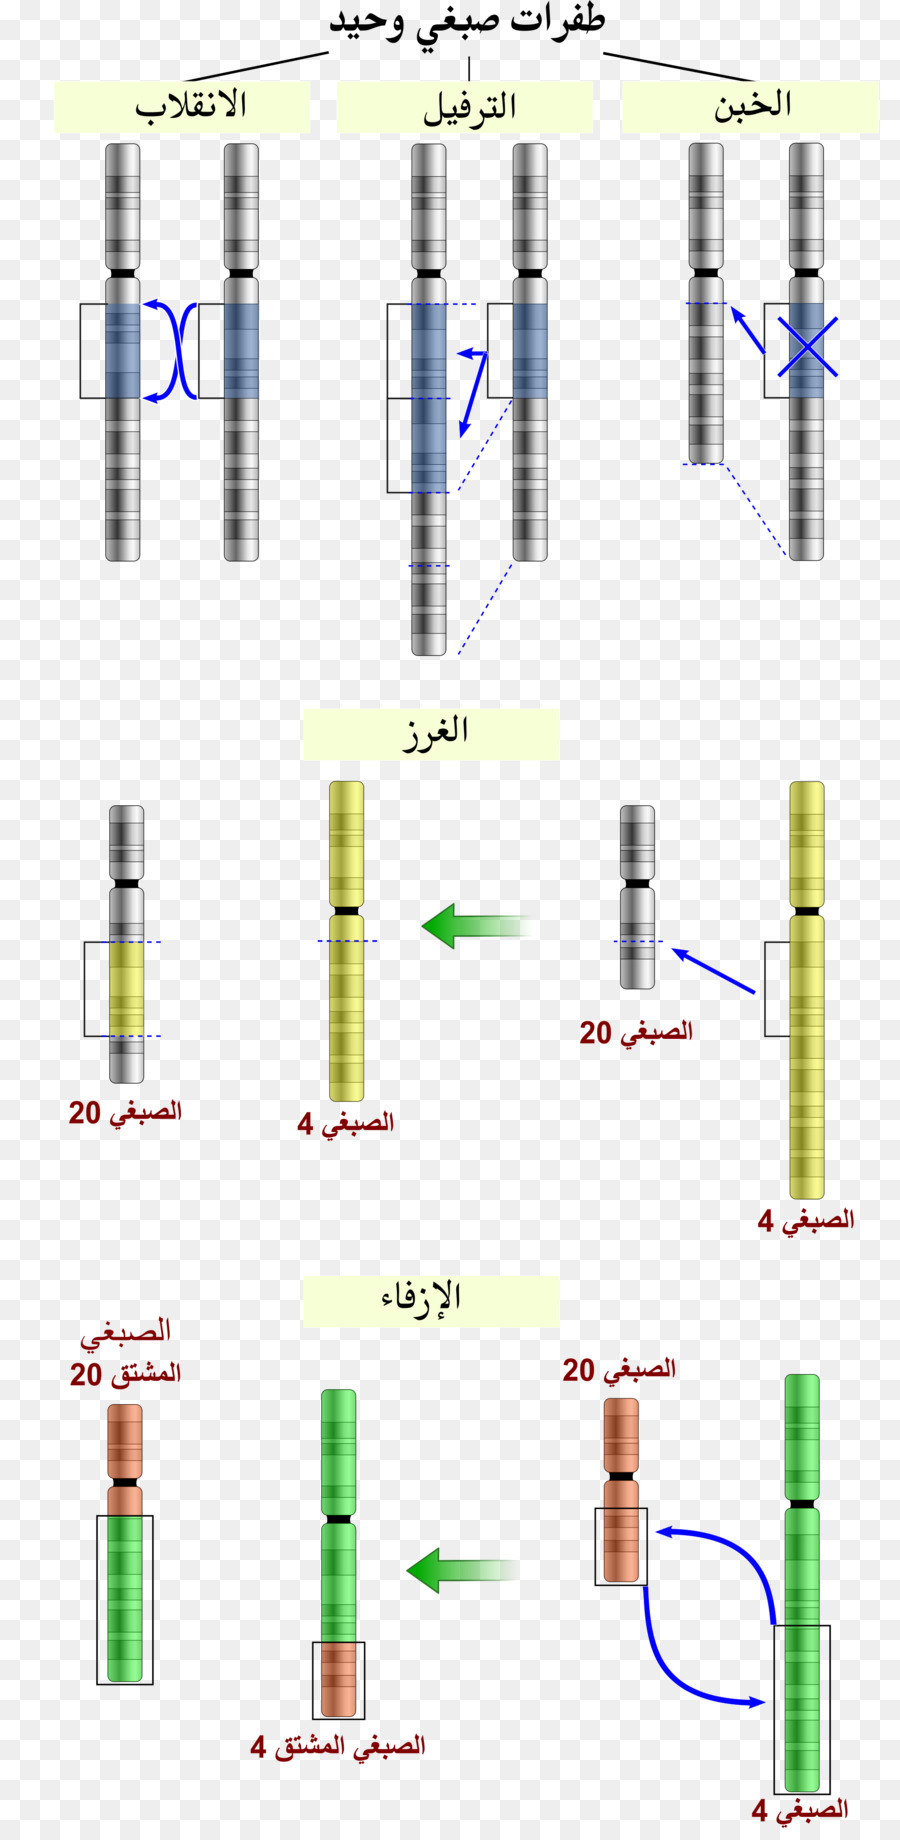 Chromosomale Anomalie Chromosomale Translokation Mutation Chromosomen-inversion - Chromosom